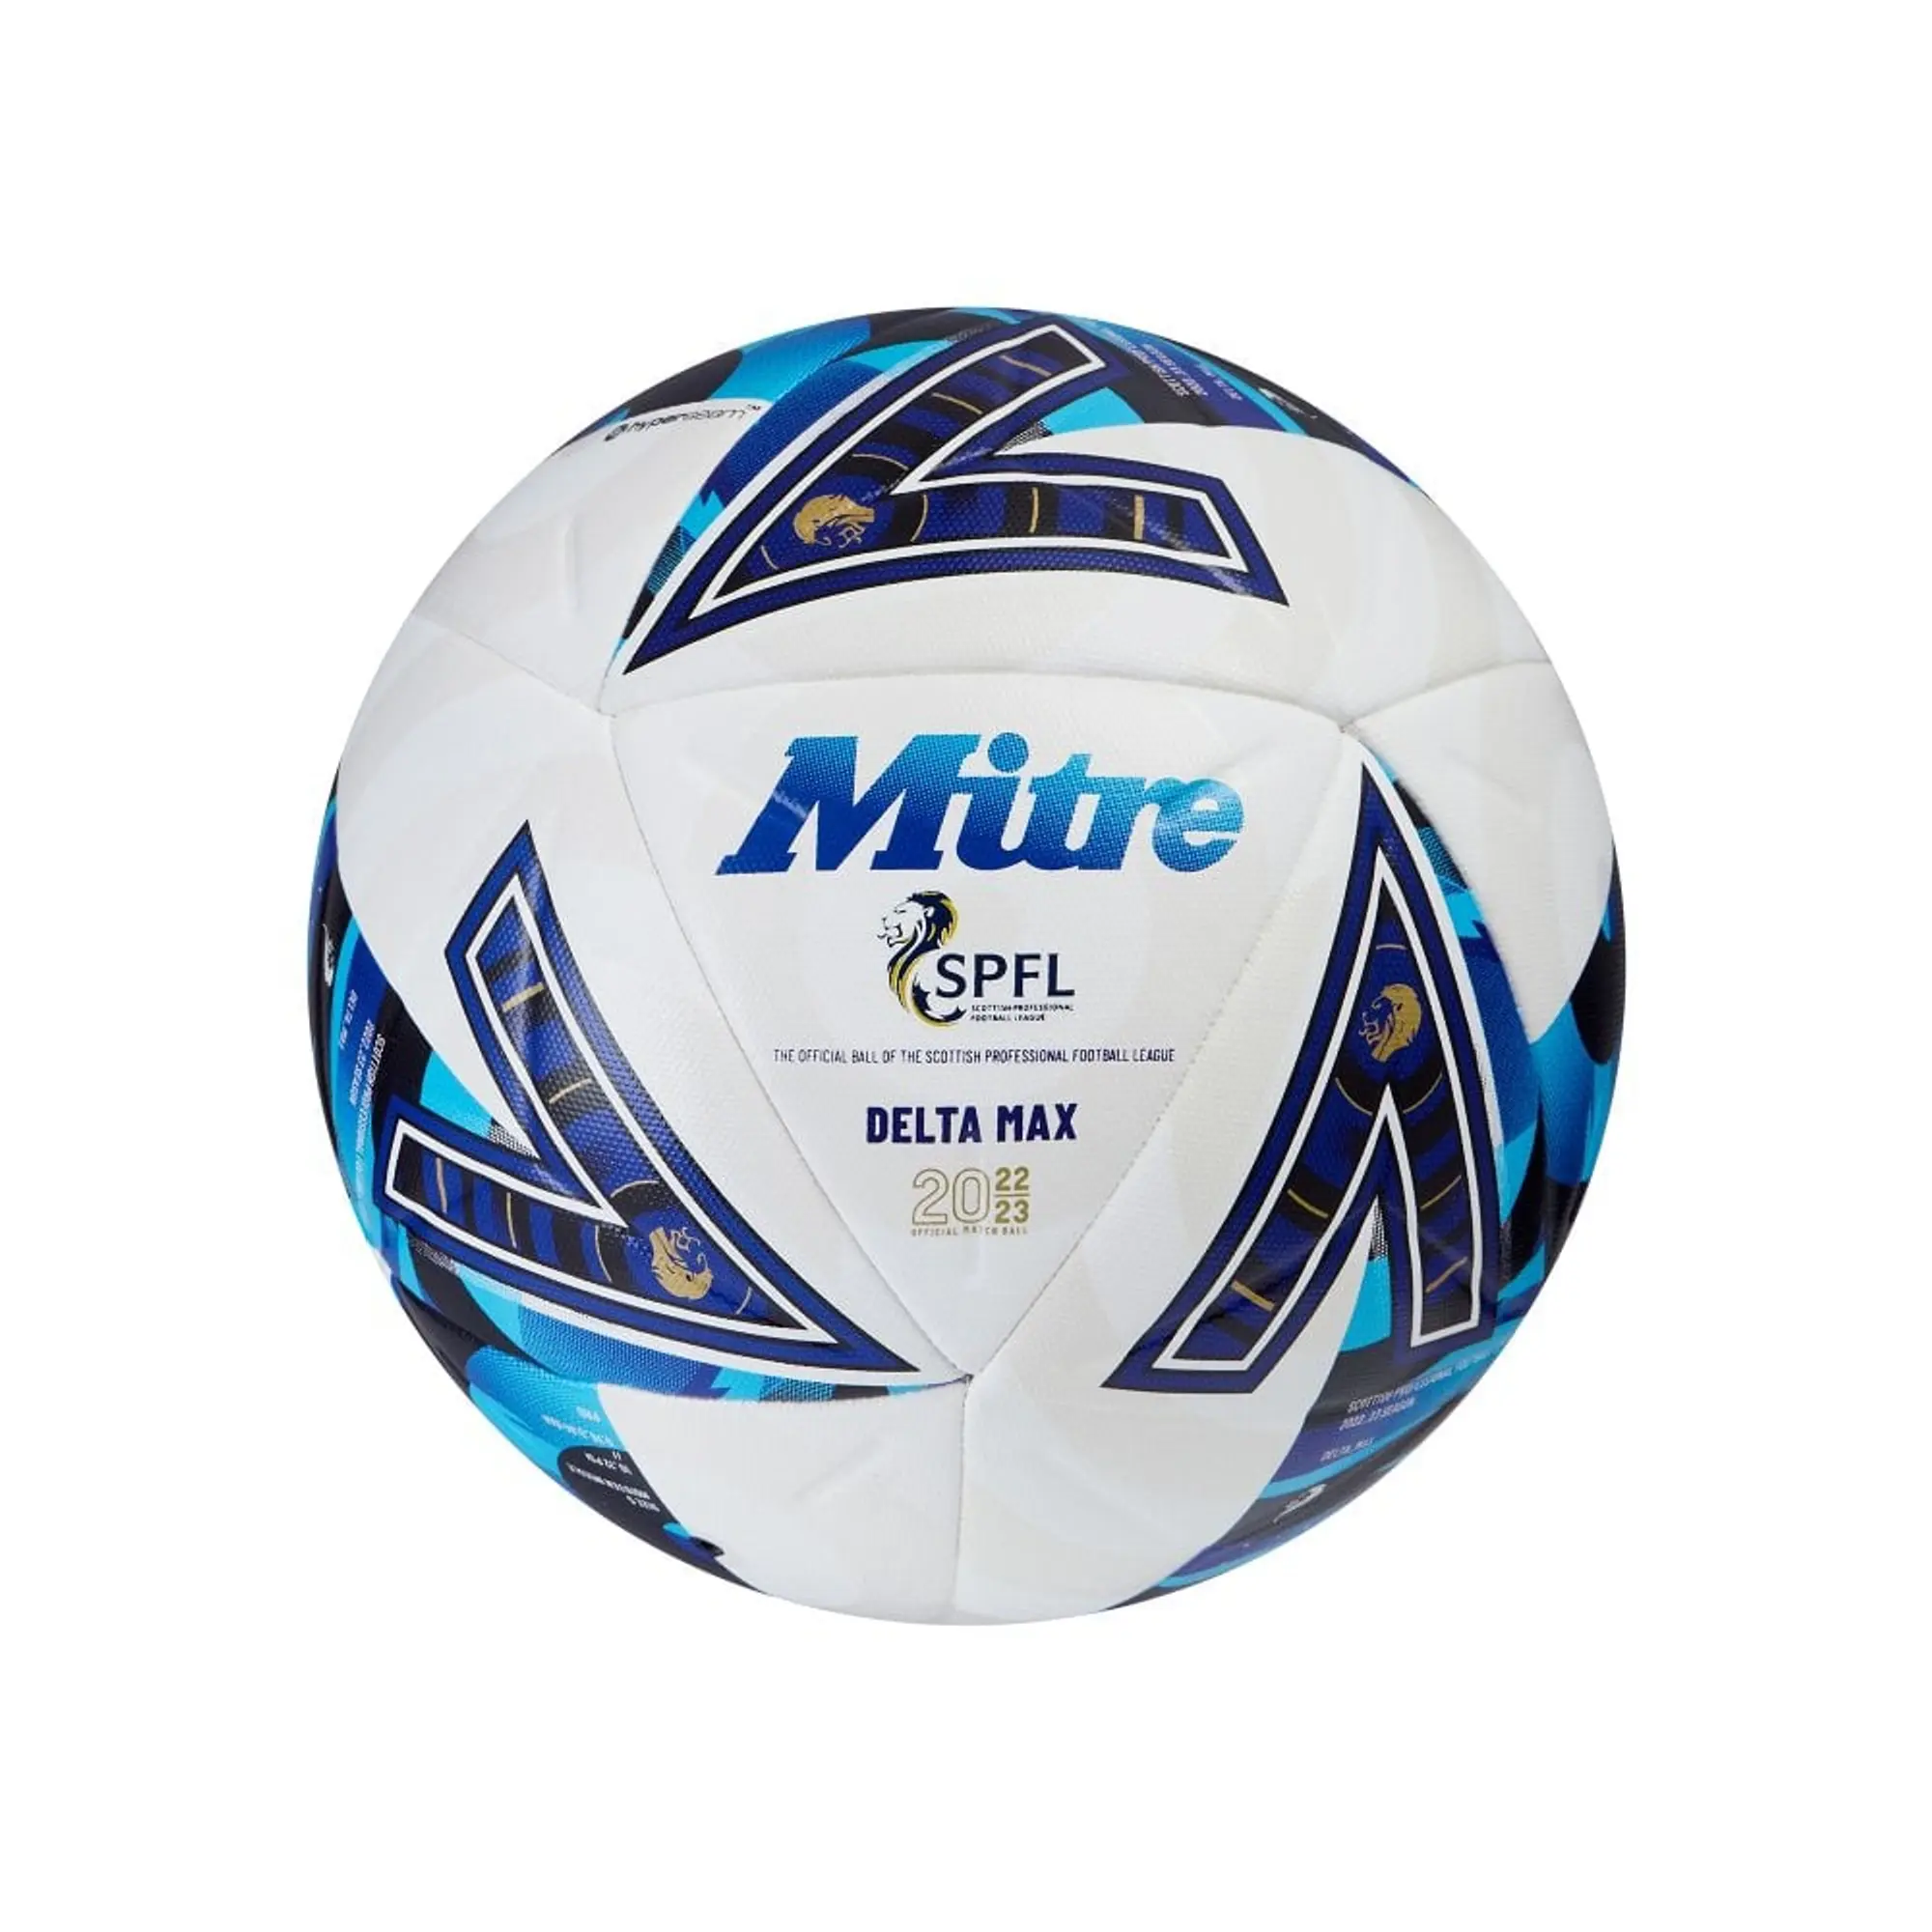 Mitre Delta Max SPFL Football - White/Purple/Blue